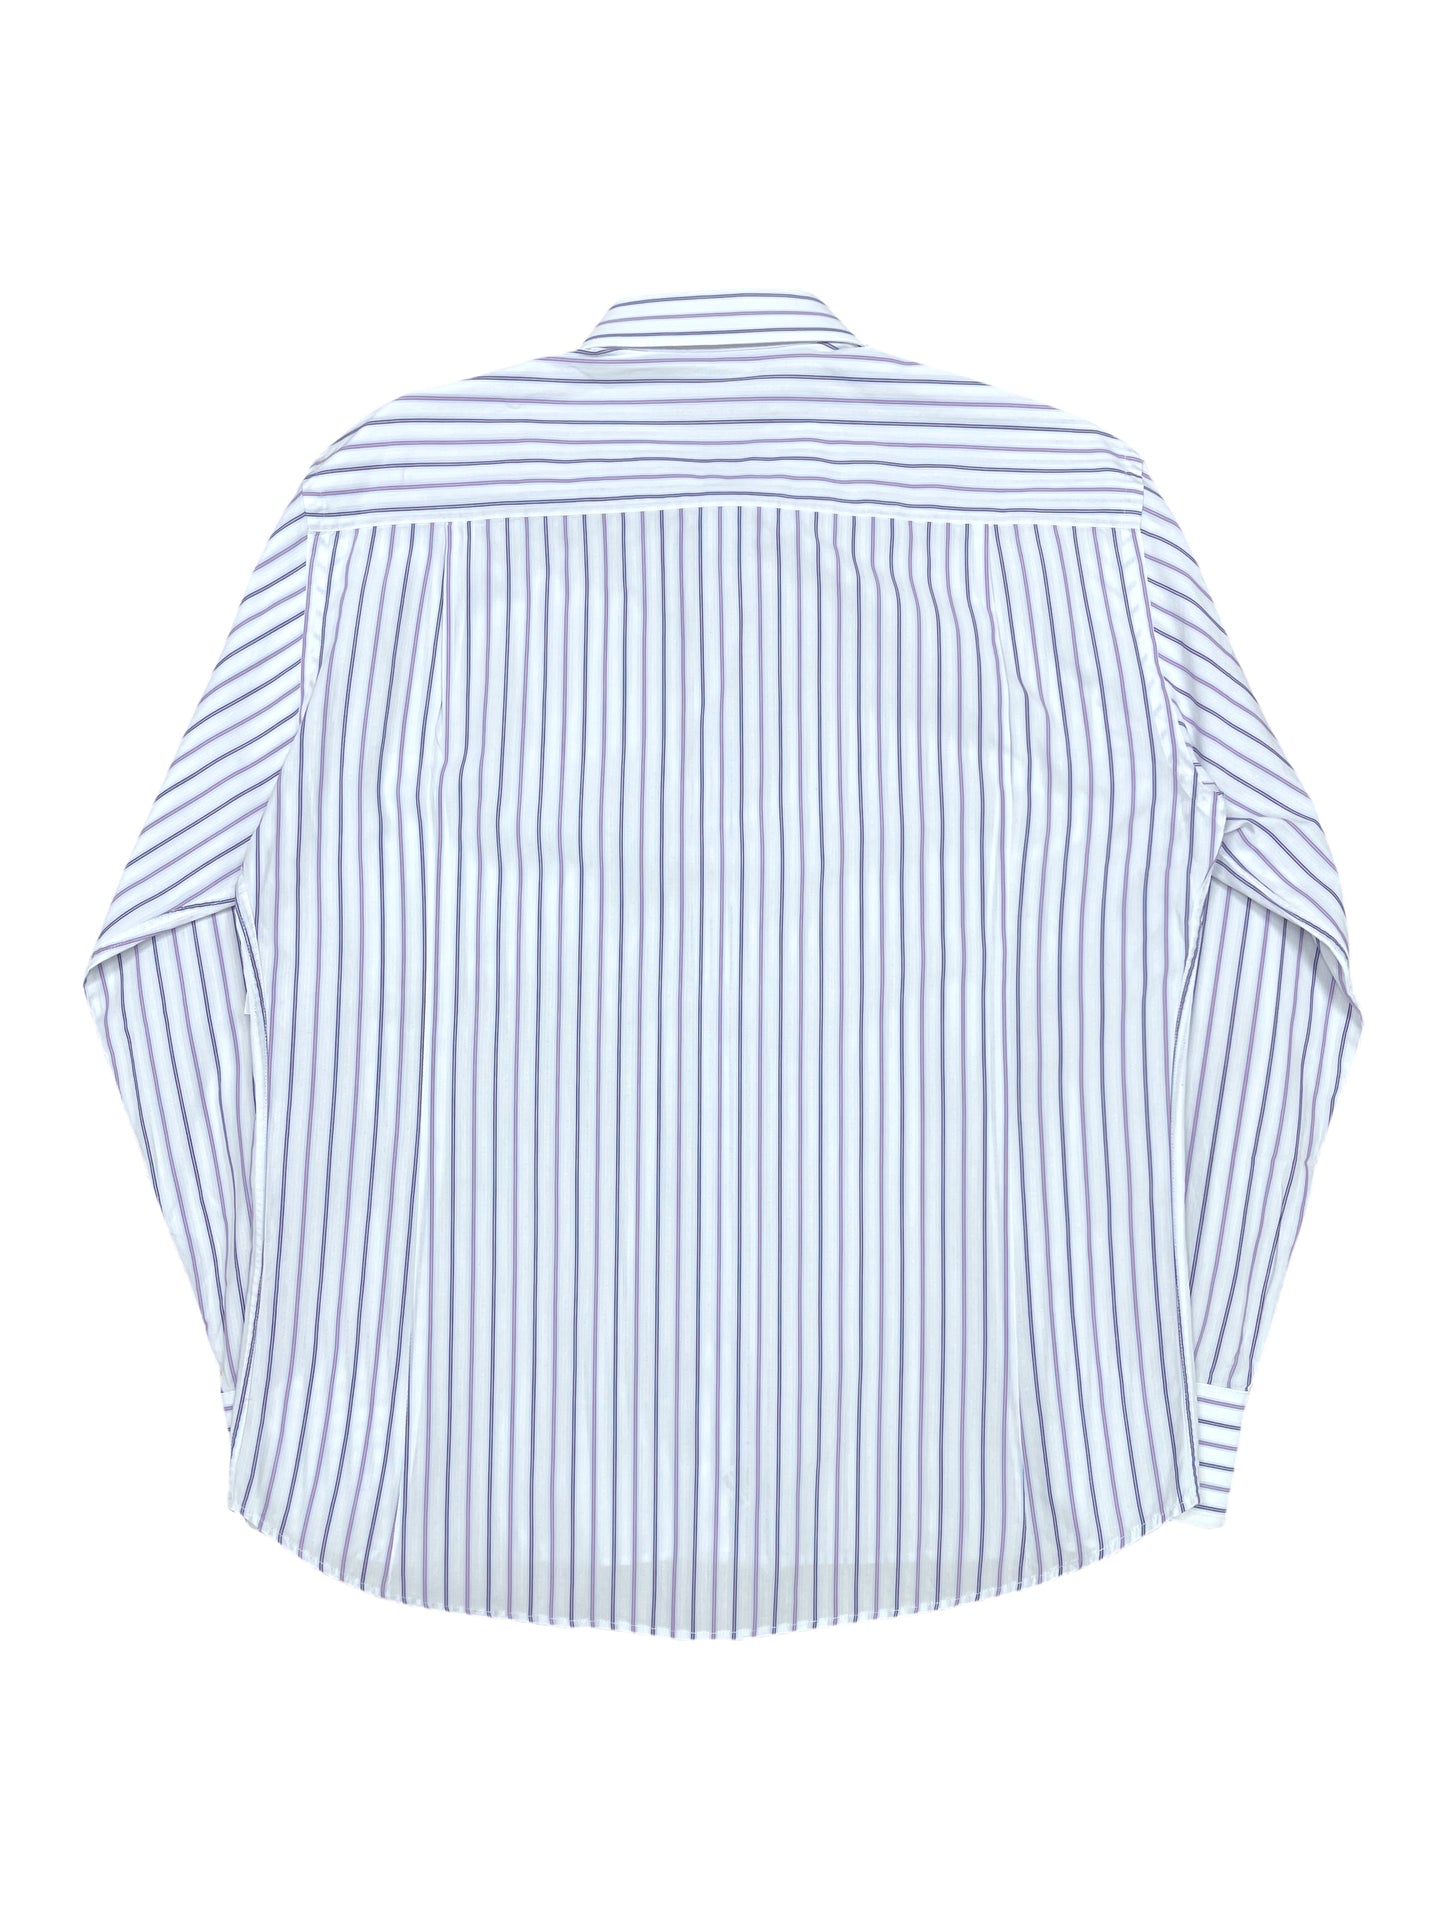 Canali White Striped Dress Shirt 17 - XL